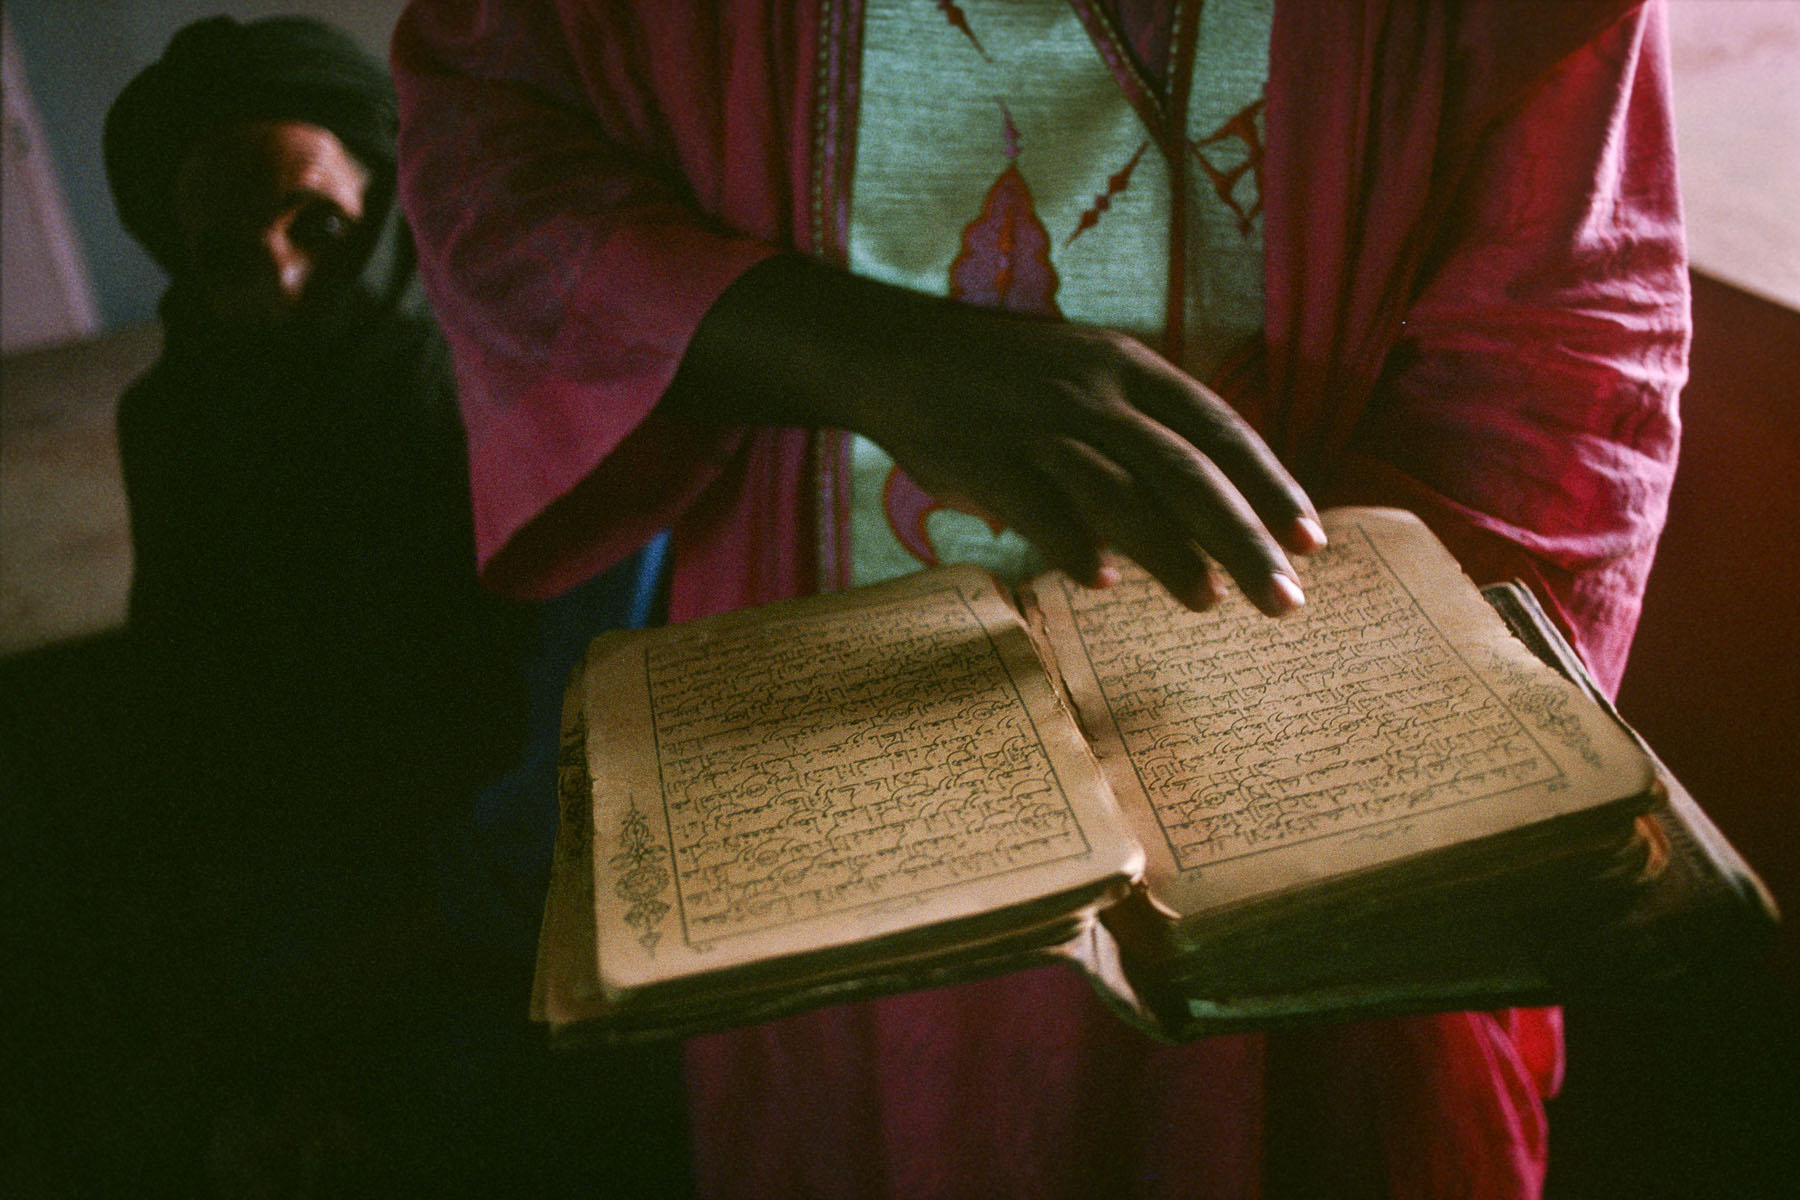 Timbuktu Islamic library in 1995